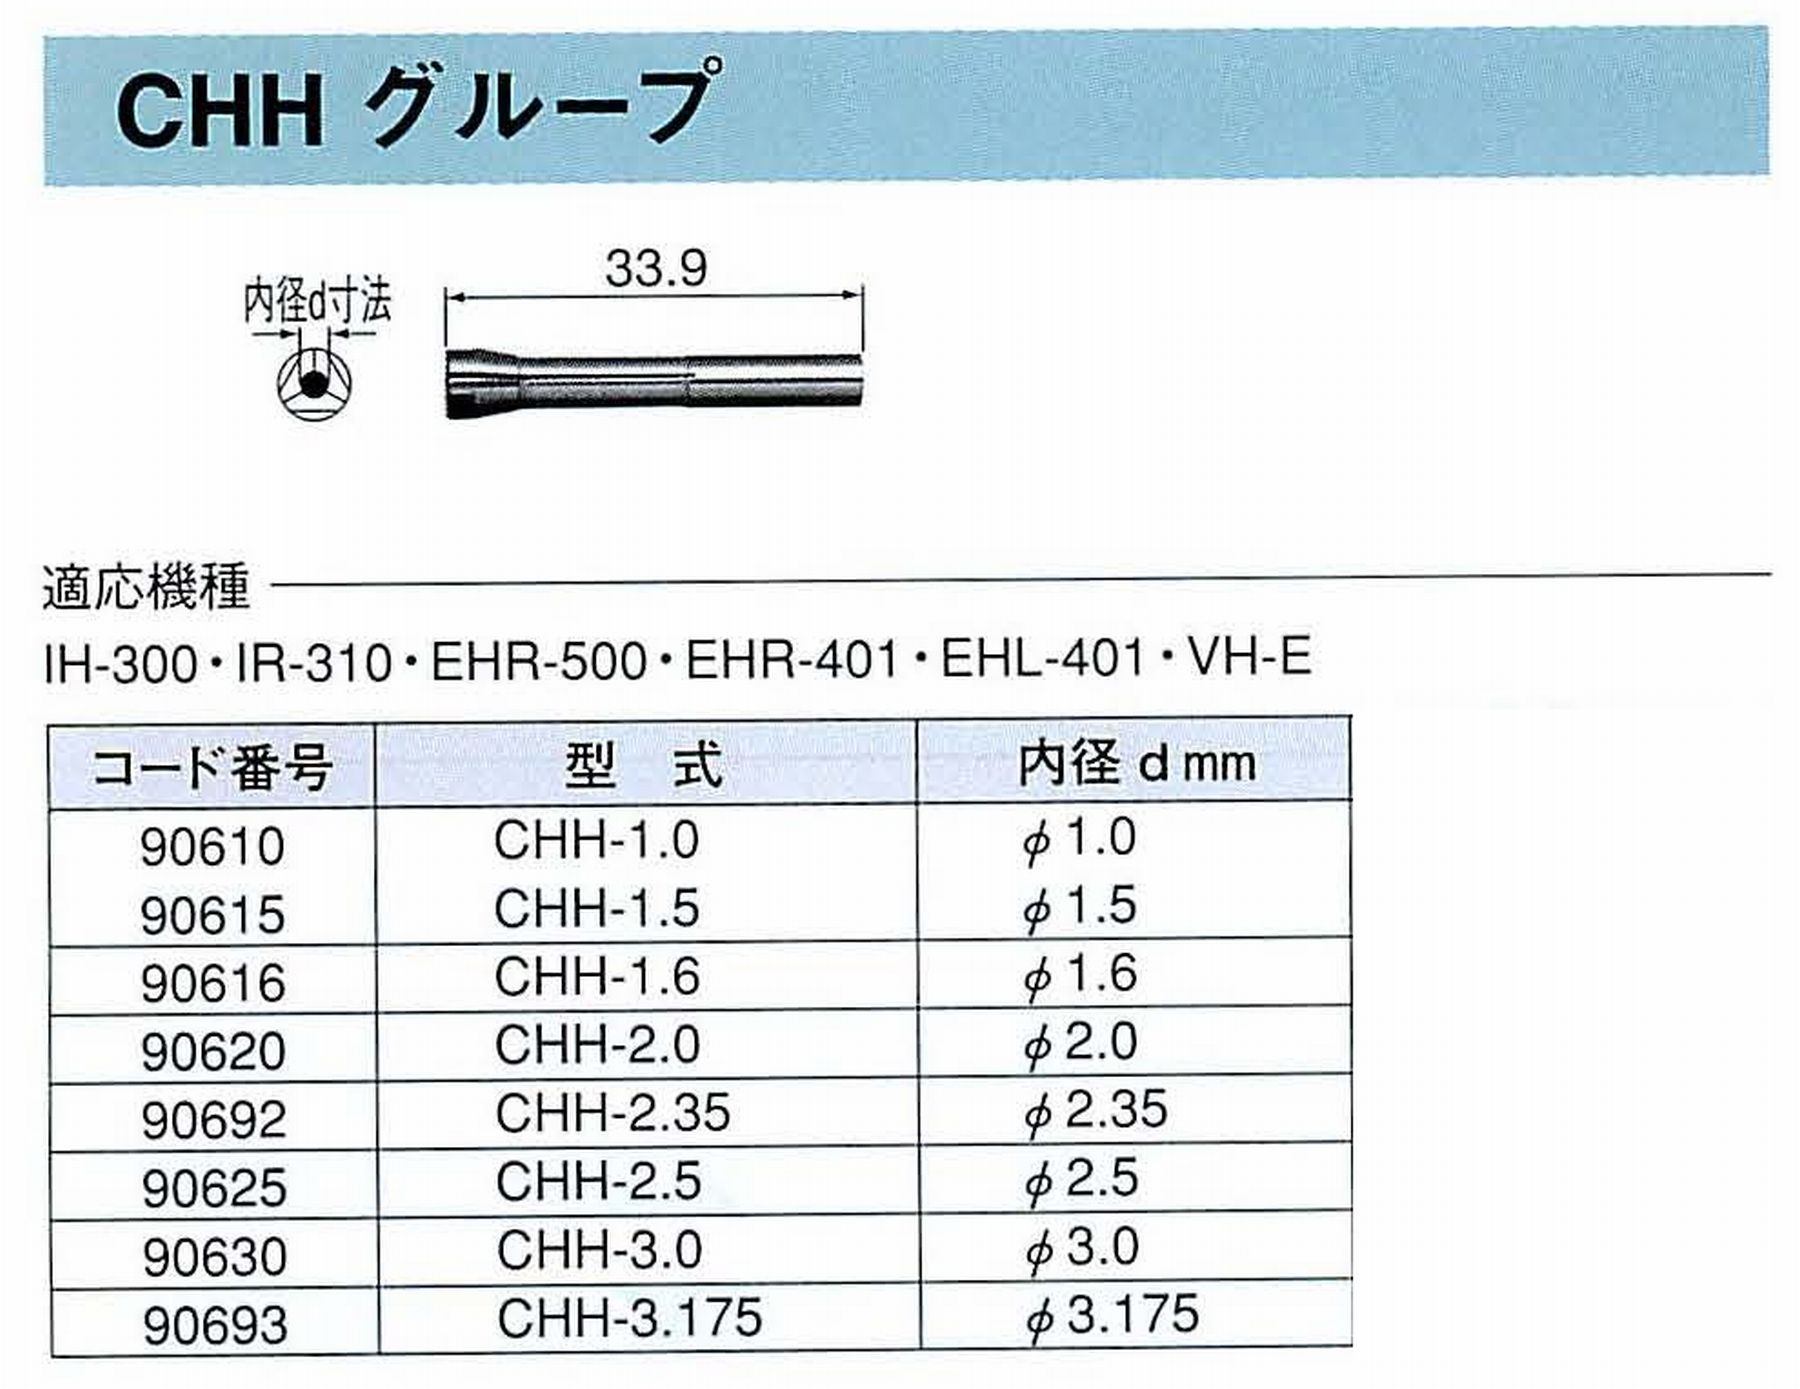 ナカニシ/NAKANISHI コレットチャック コード番号 90693 型式 CHH-3.175 内径:Φ3.175